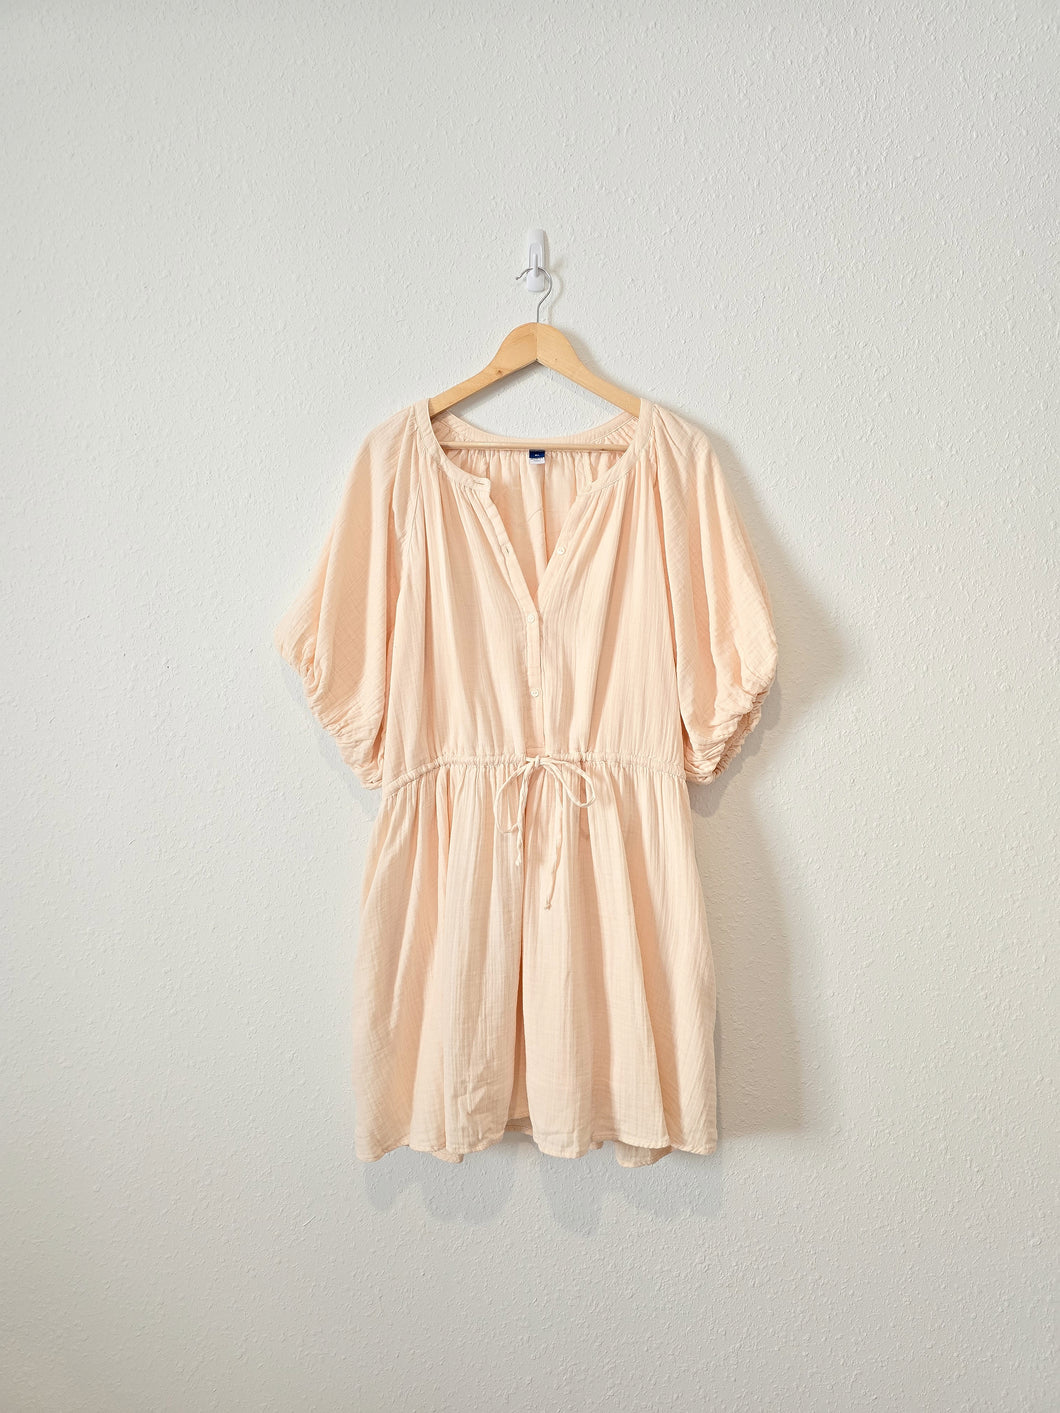 NEW Gauzy Puff Sleeve Dress (XL)